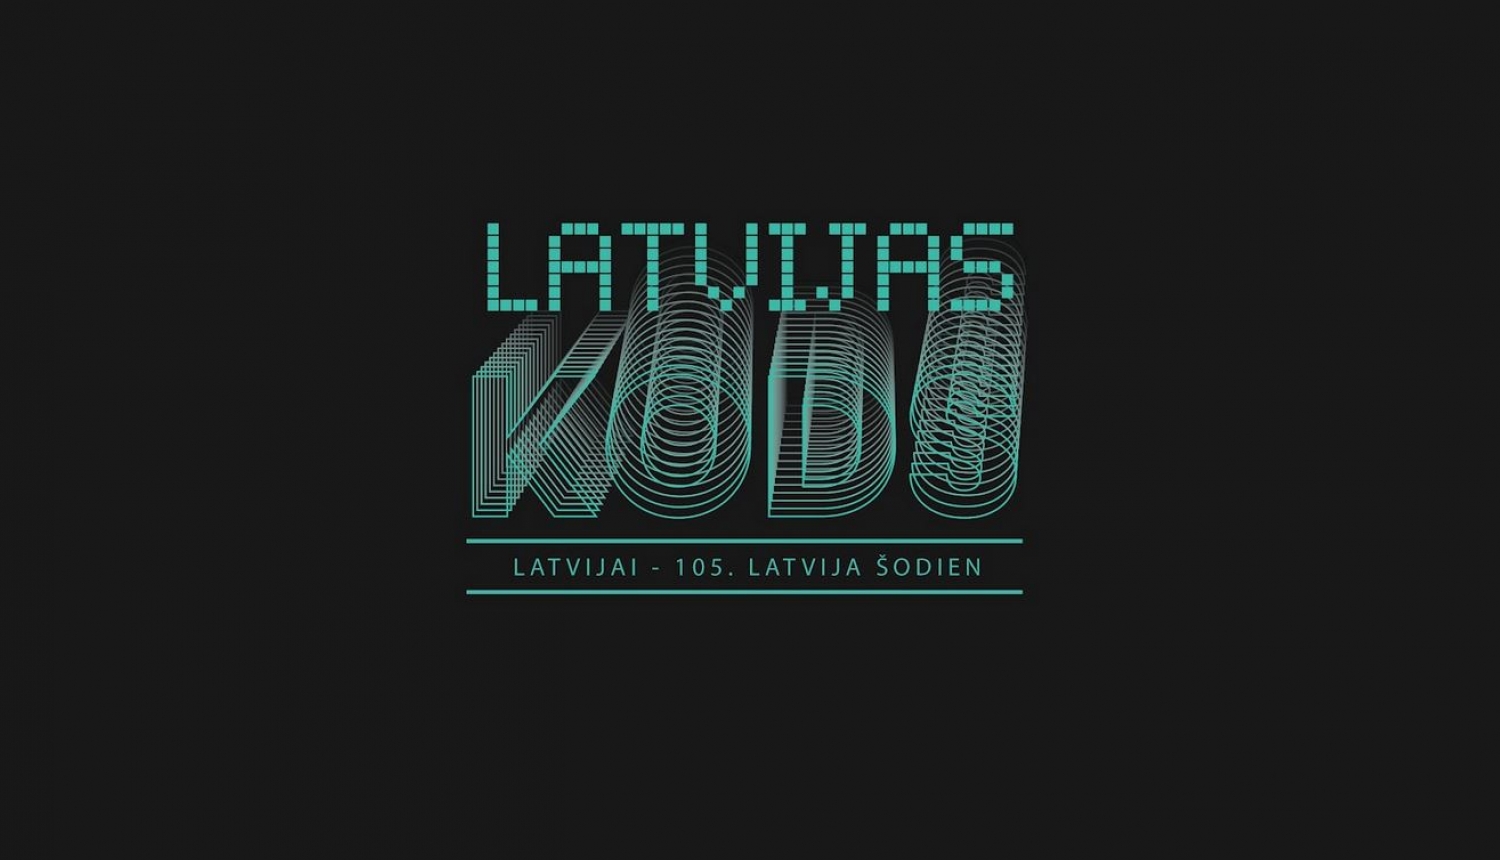 Dokumentālo īsfilmu cikla “Latvijas kods. Latvija šodien” vizuālais materiāls